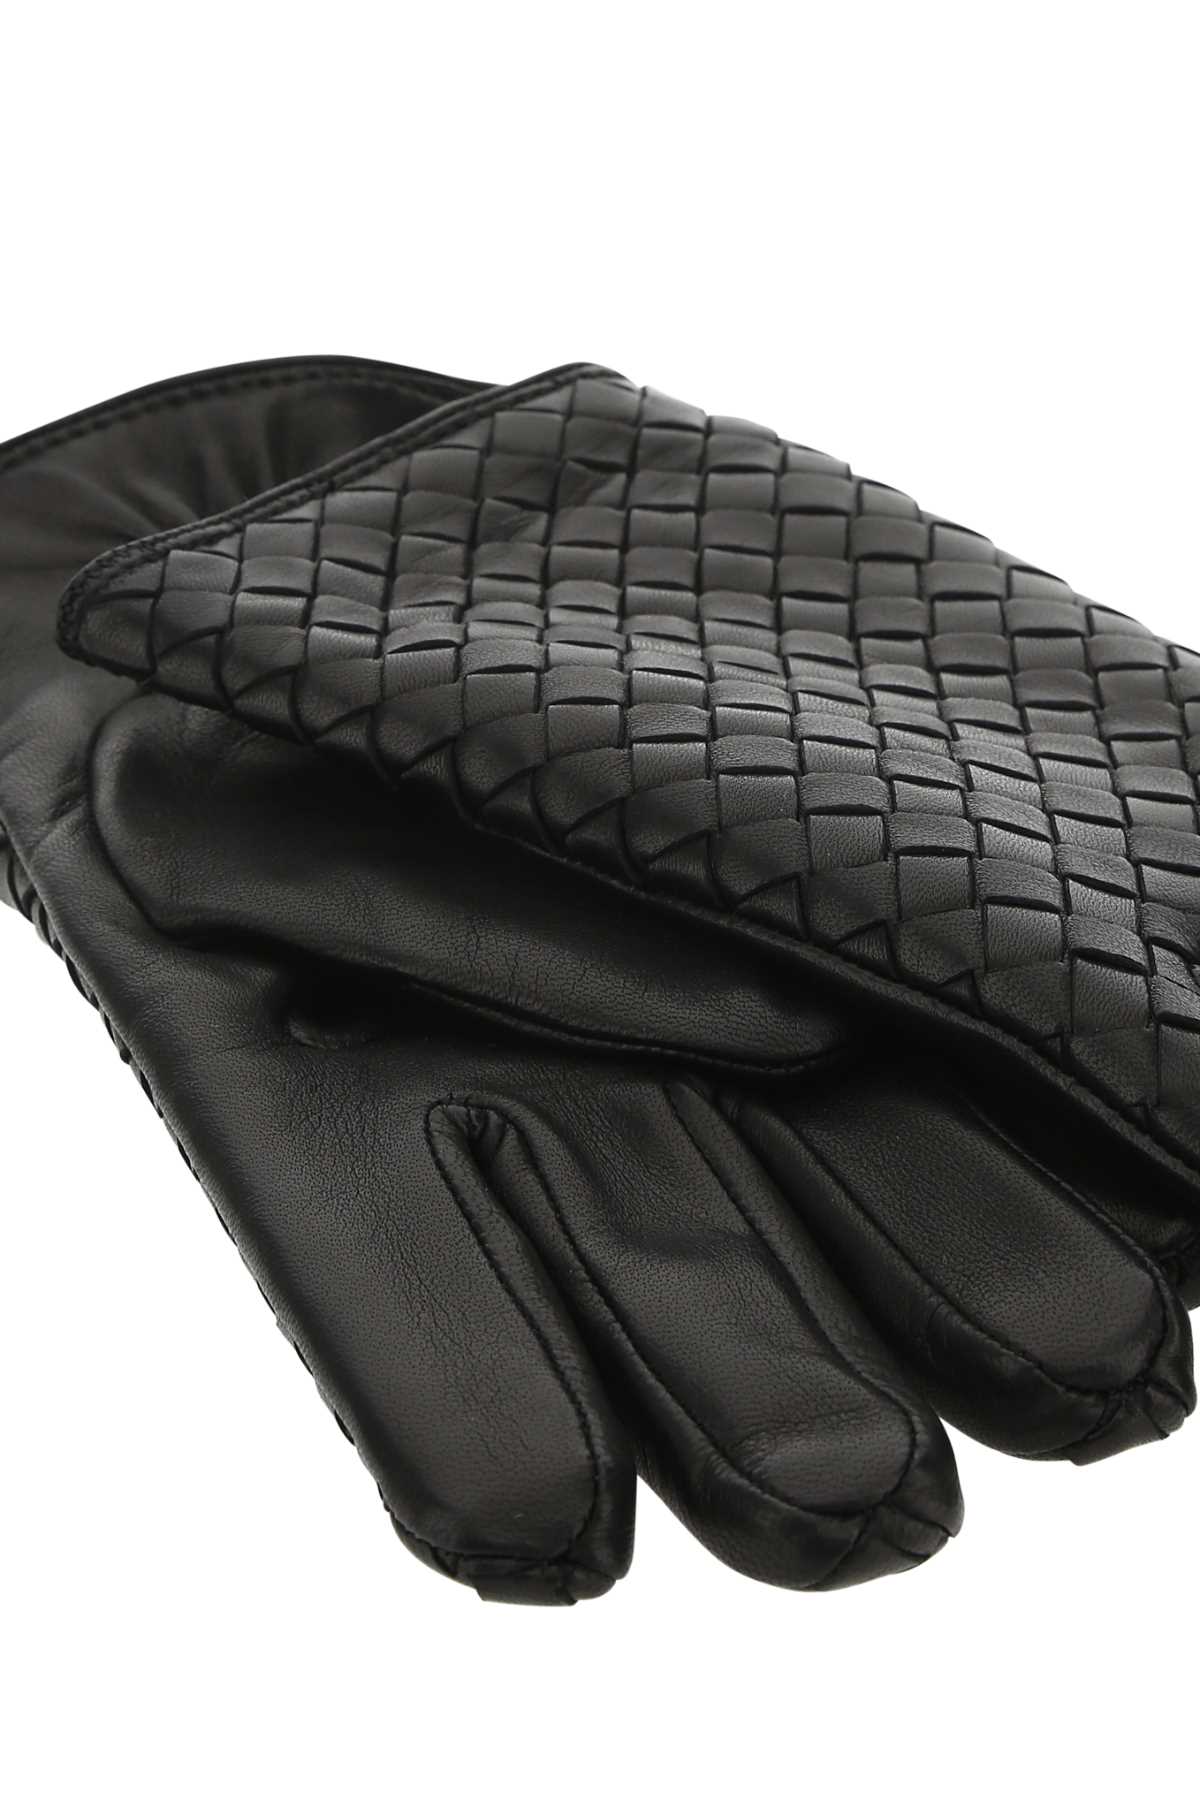 Bottega Veneta Black Leather Gloves In 1000